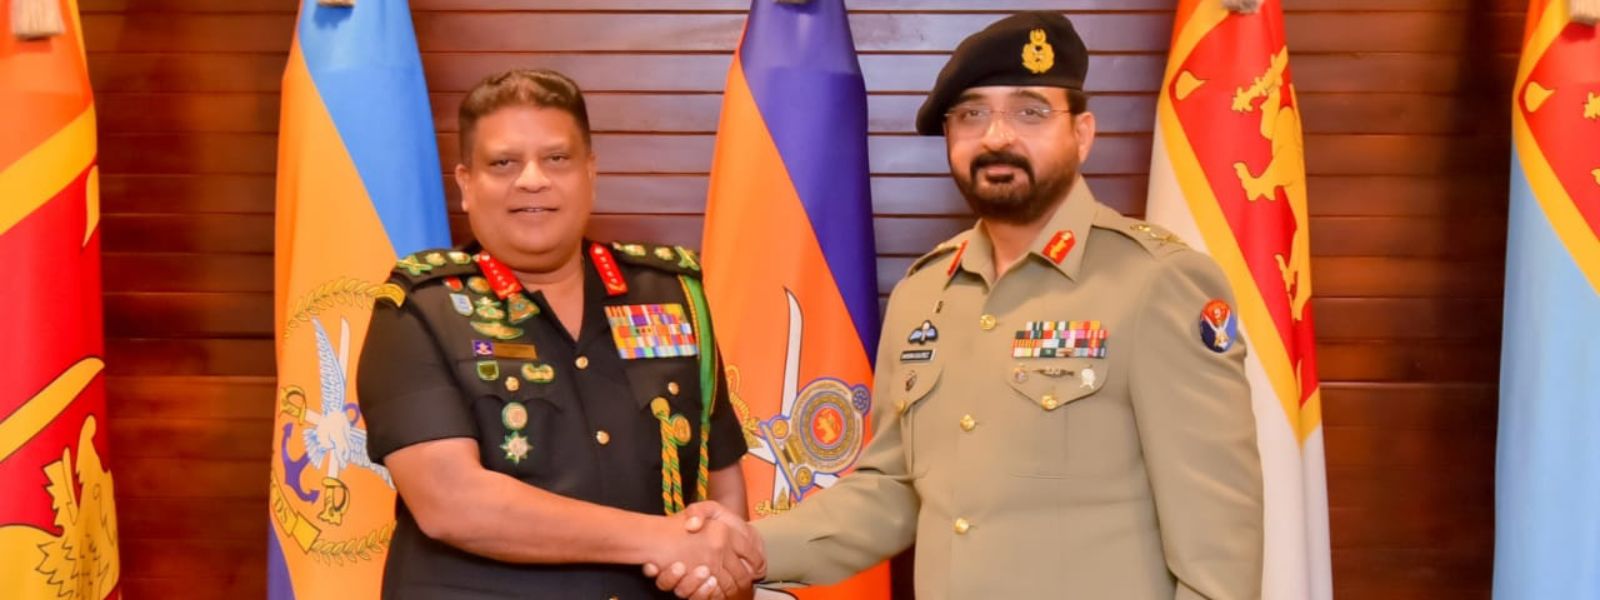 Pakistan Army Lt. General Visits Sri Lanka's CDS